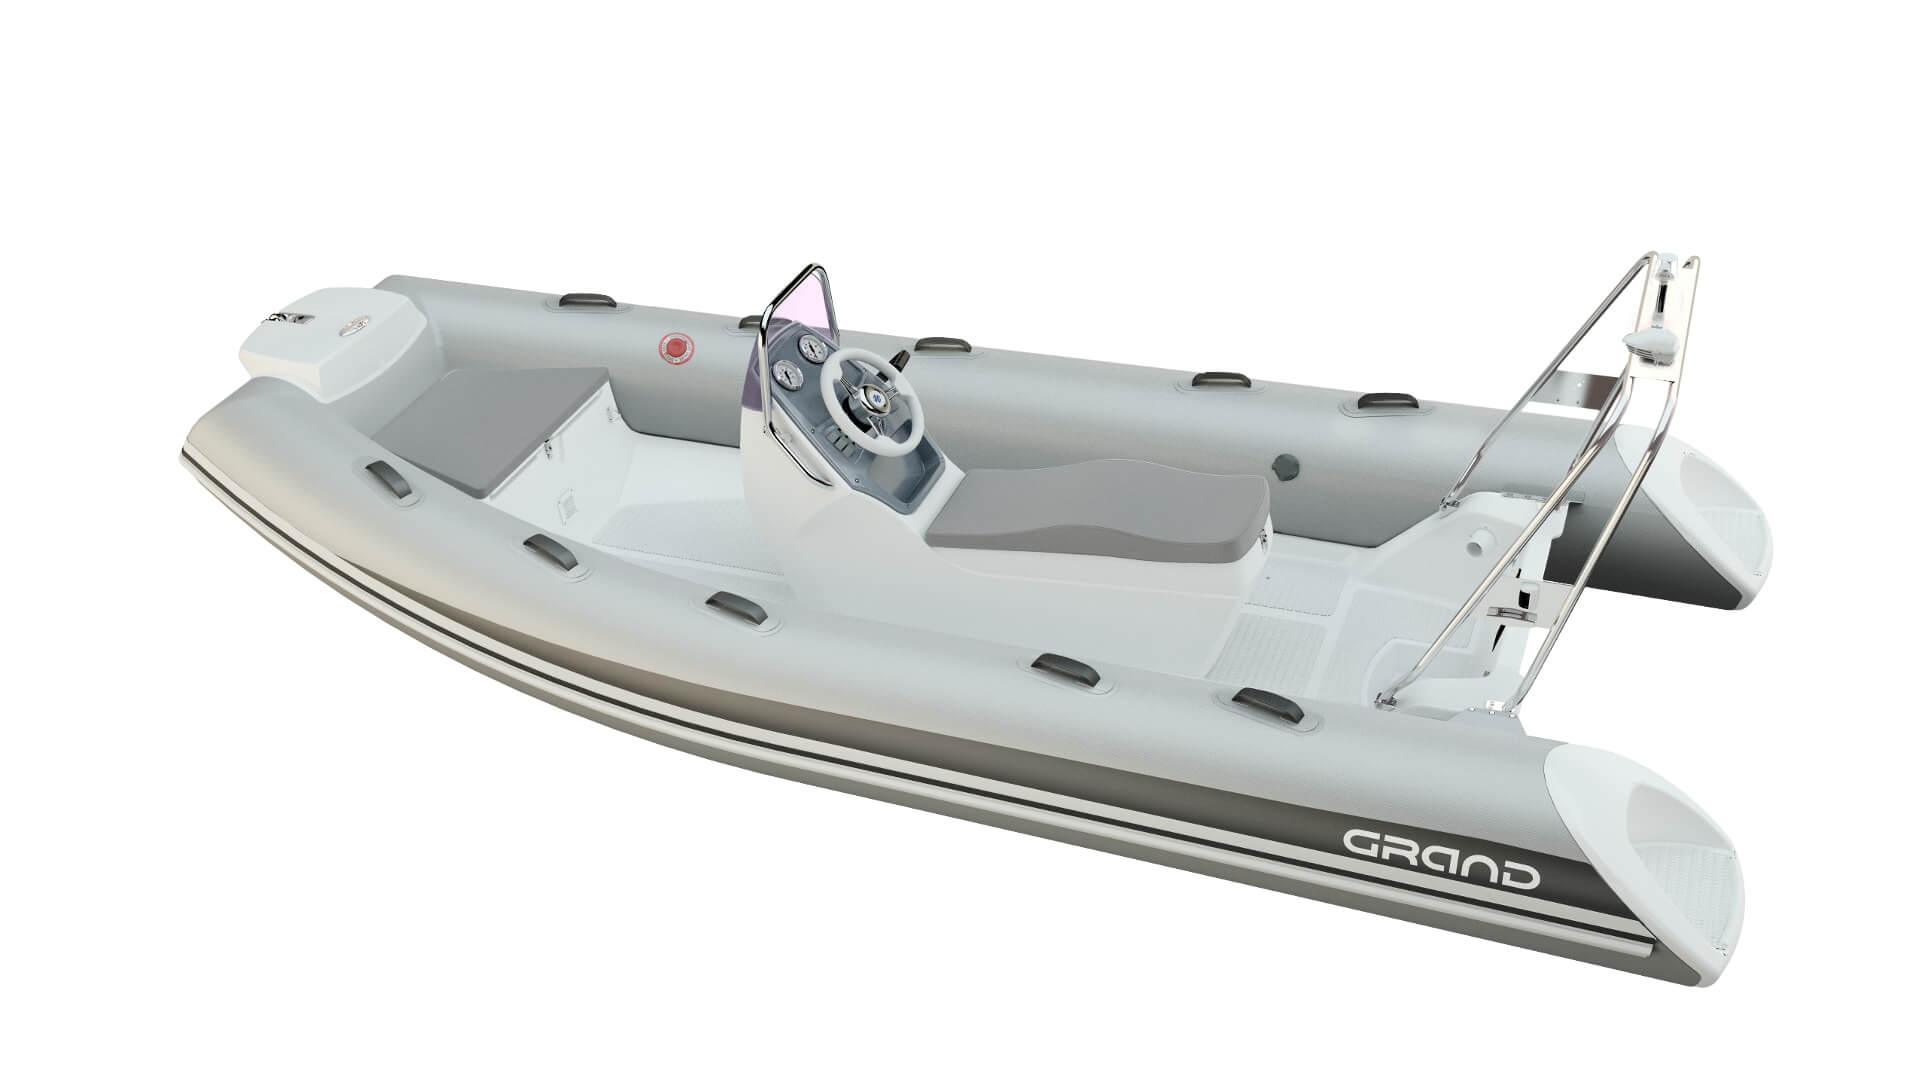 Надувная лодка с жестким дном GRAND Silver Line S470NS, Надувная лодка GRAND Silver Line S470NS, GRAND Silver Line S470NSF, GRAND Silver Line S470NS, GRAND S470NSF, GRAND S470NS, GRAND S470, Надувная лодка GRAND, Надувная лодка ГРАНД, Надувная лодка с жестким дном, RIB, Rigid Inflatable Boats